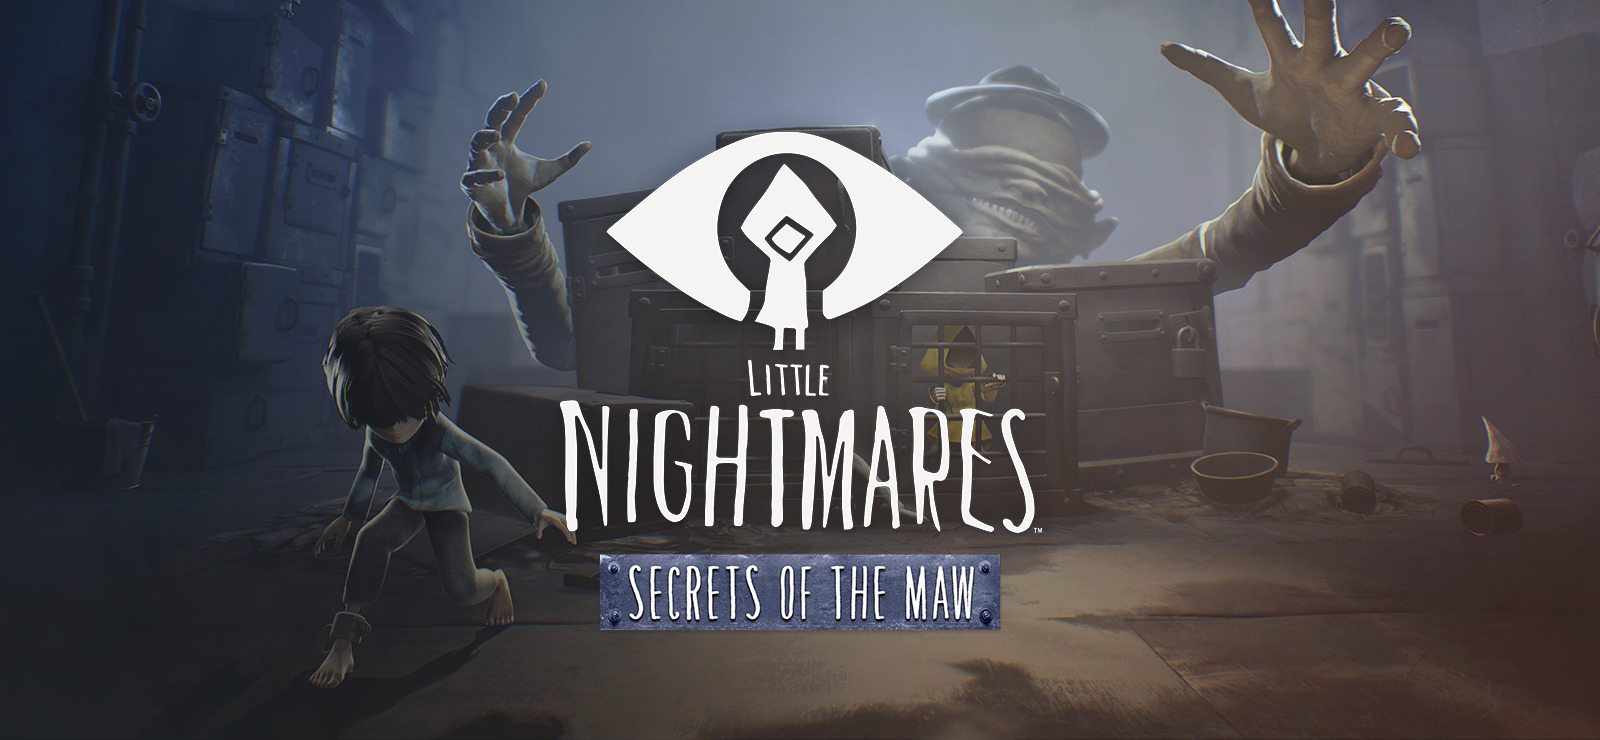 Little Nightmares lança a sua última DLC